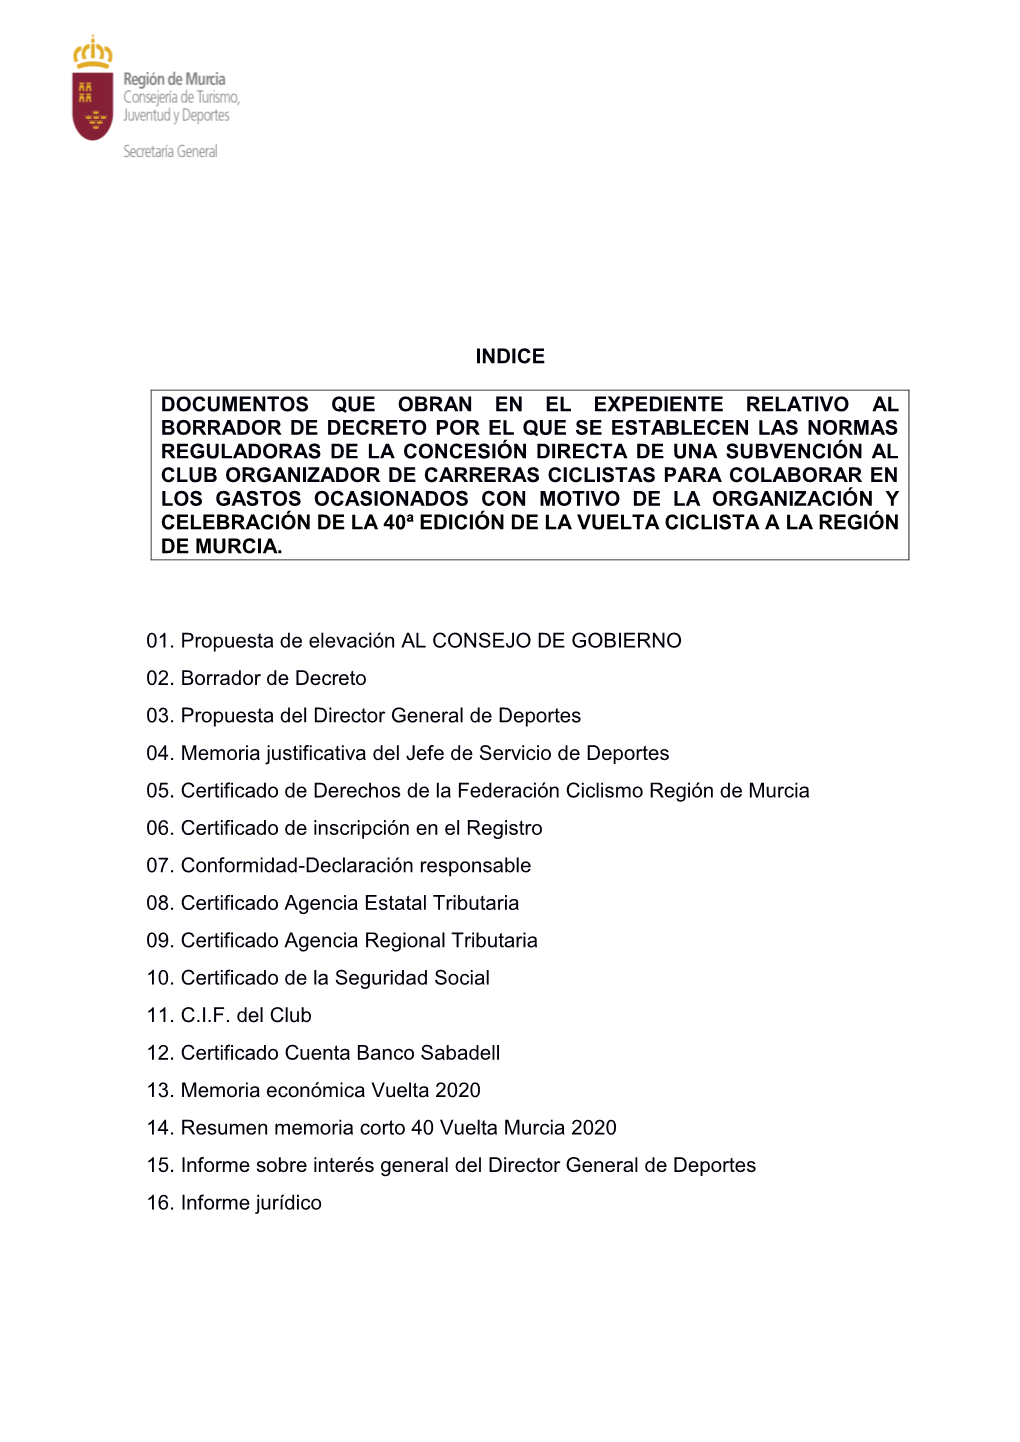 Indice Documentos Que Obran En El Expediente Relativo Al